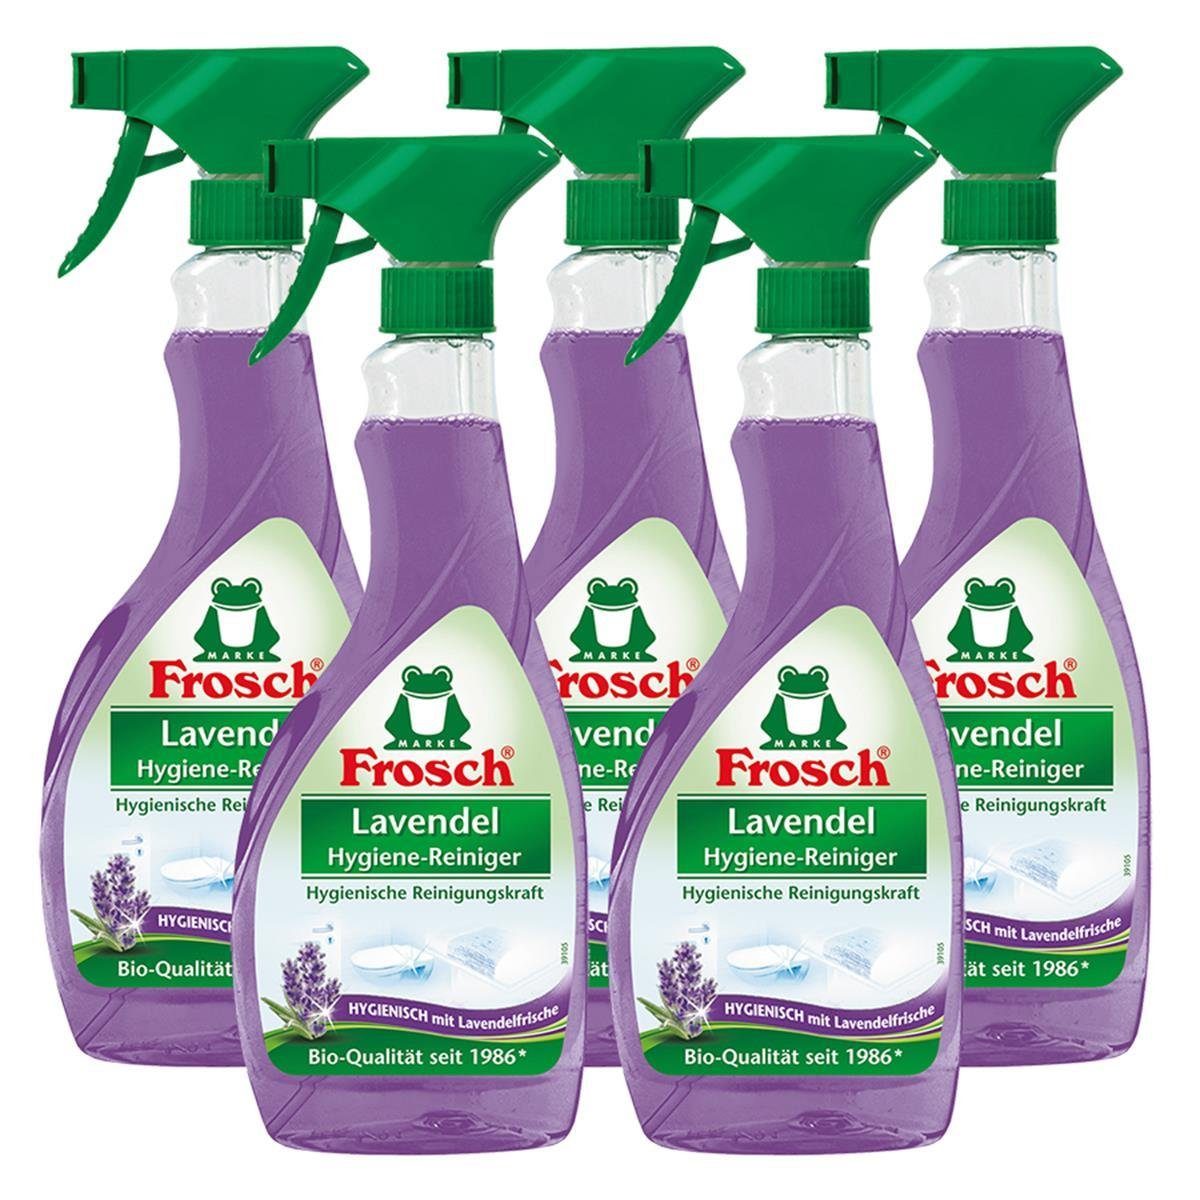 FROSCH 5x Frosch Lavendel Hygiene-Reiniger 500 ml Sprühflasche Spezialwaschmittel